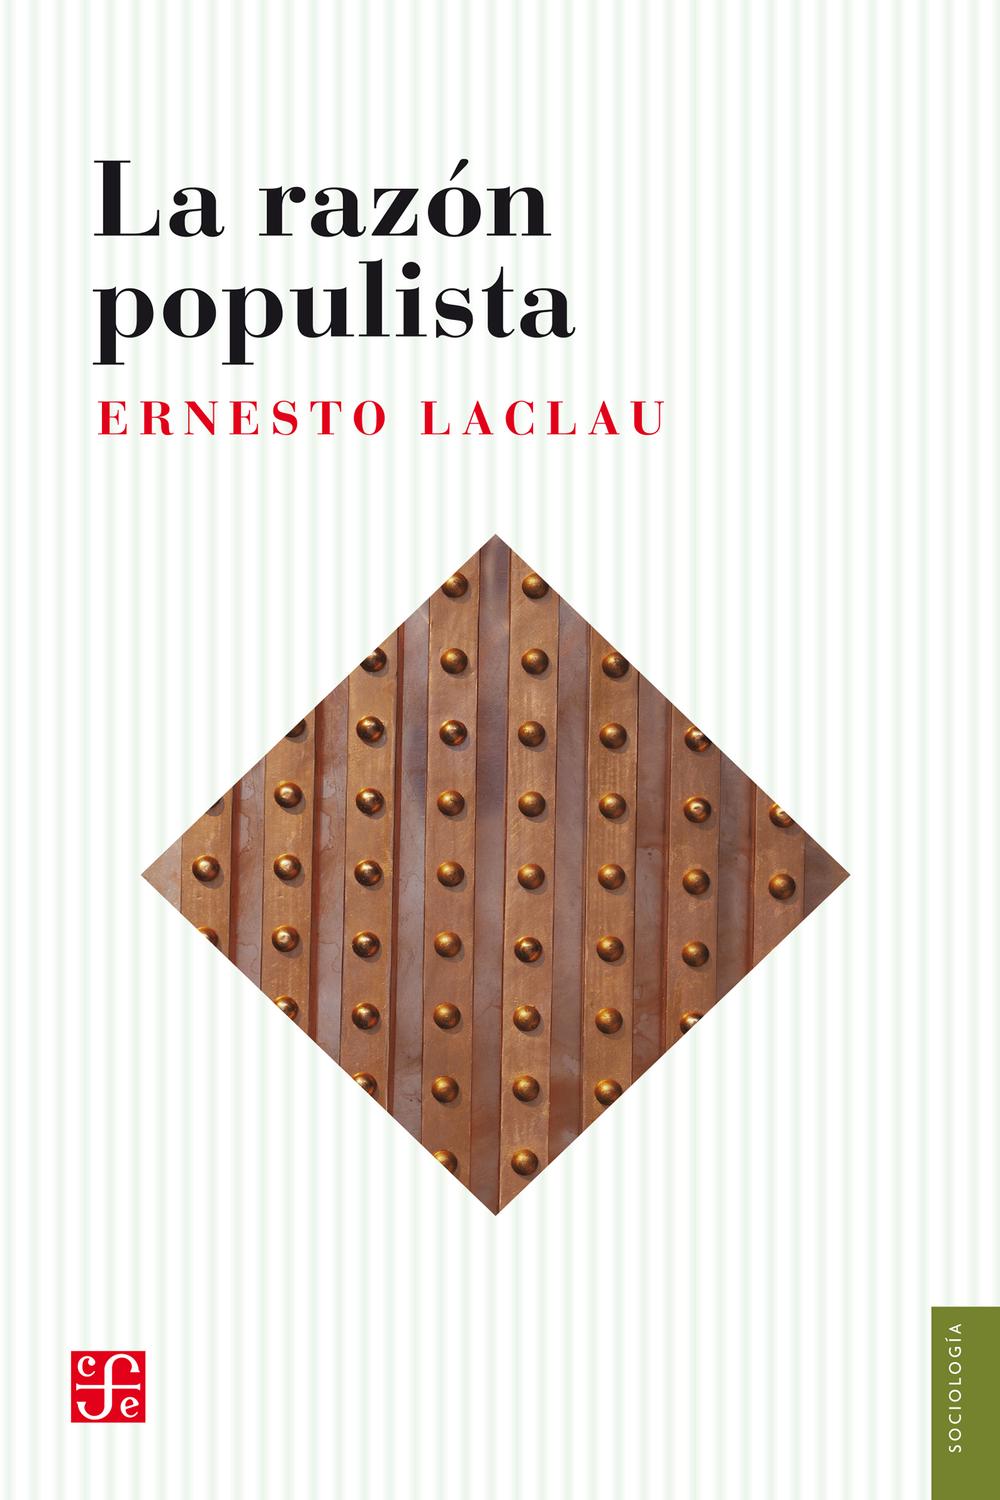 La razón populista - Ernesto Laclau, Soledad Laclau